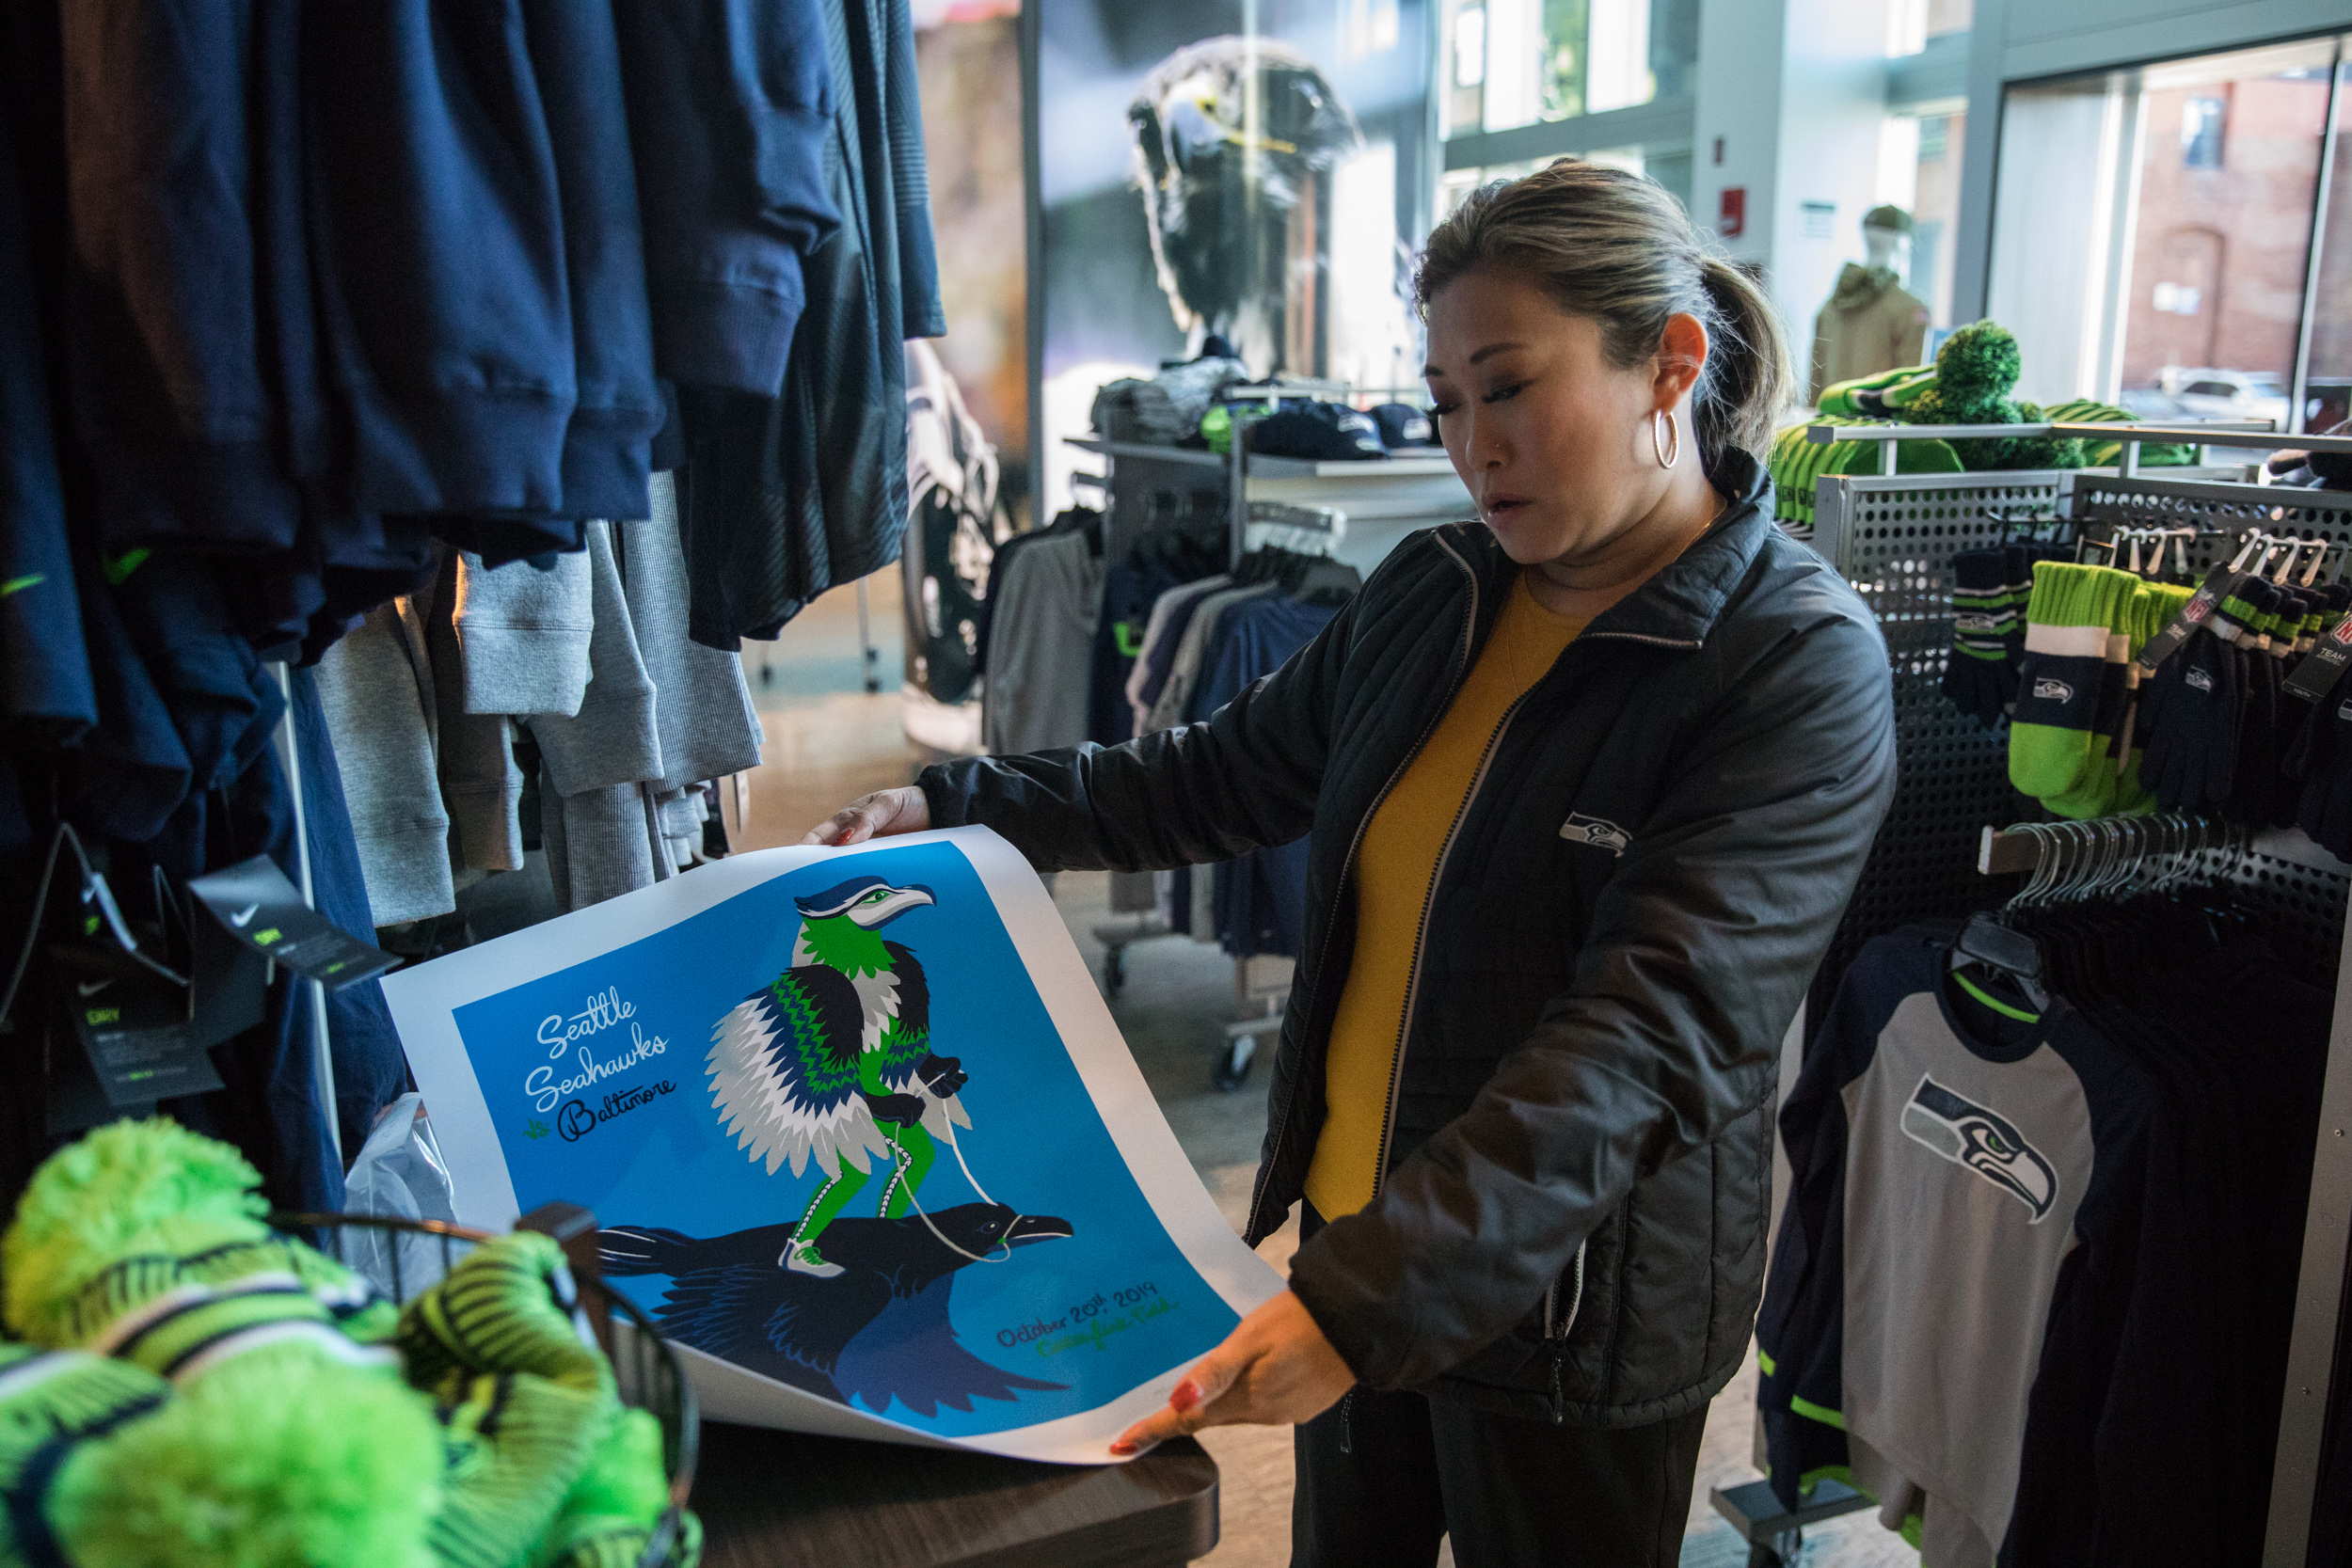 Woman unfurls a poster in the Seahawks pro shop